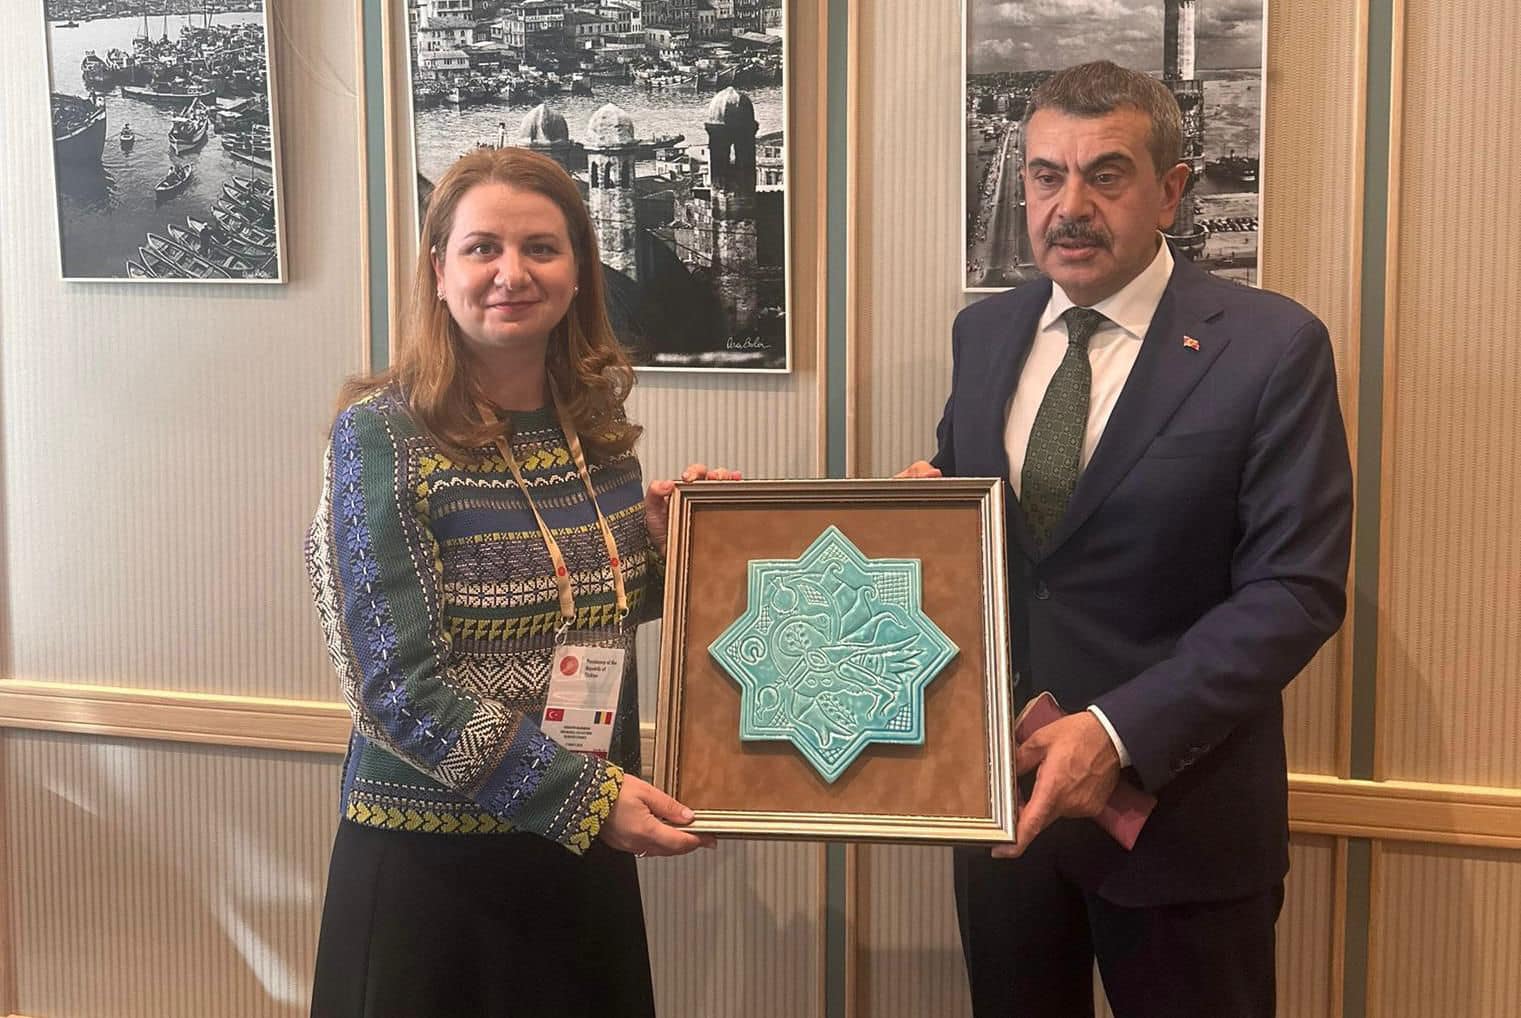 Millî Eğitim Bakanı Yusuf Tekin, Romanya Eğitim Bakanı Ligia Deca ile Ankara'da Bir Araya Geldi